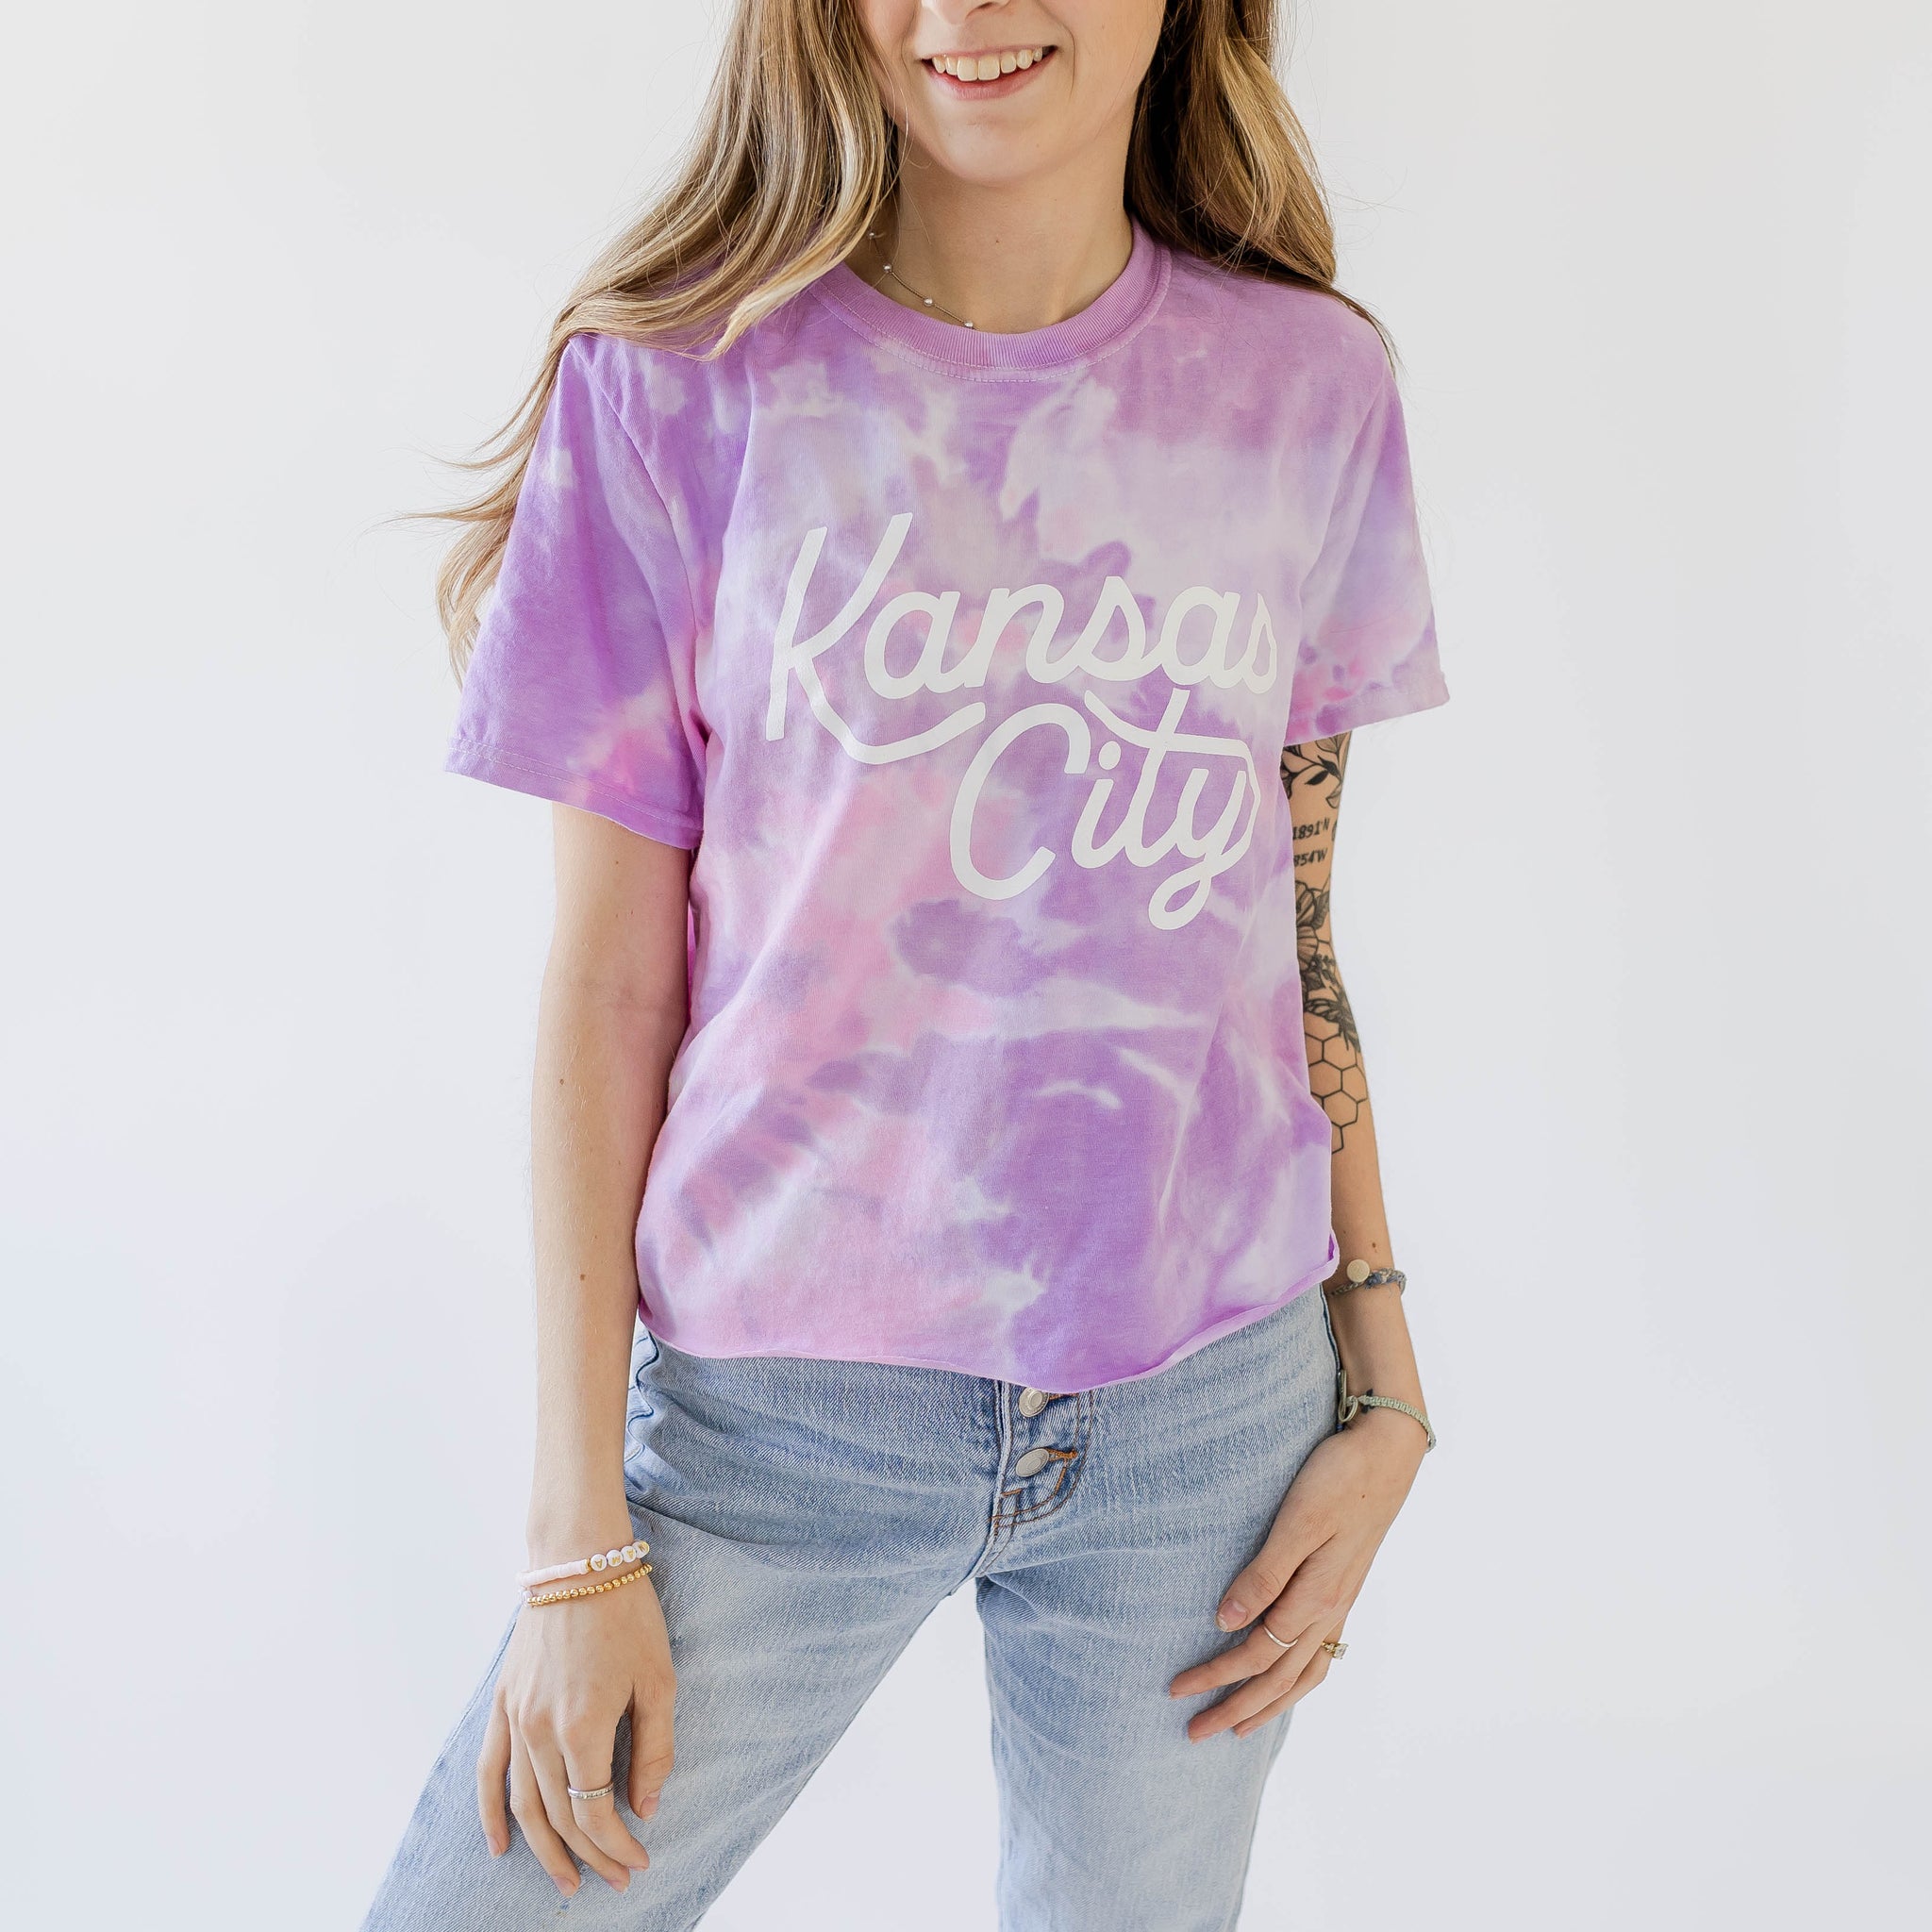 Kansas City Script Cropped T-Shirt - Pink & Purple Tie Dye - Carly